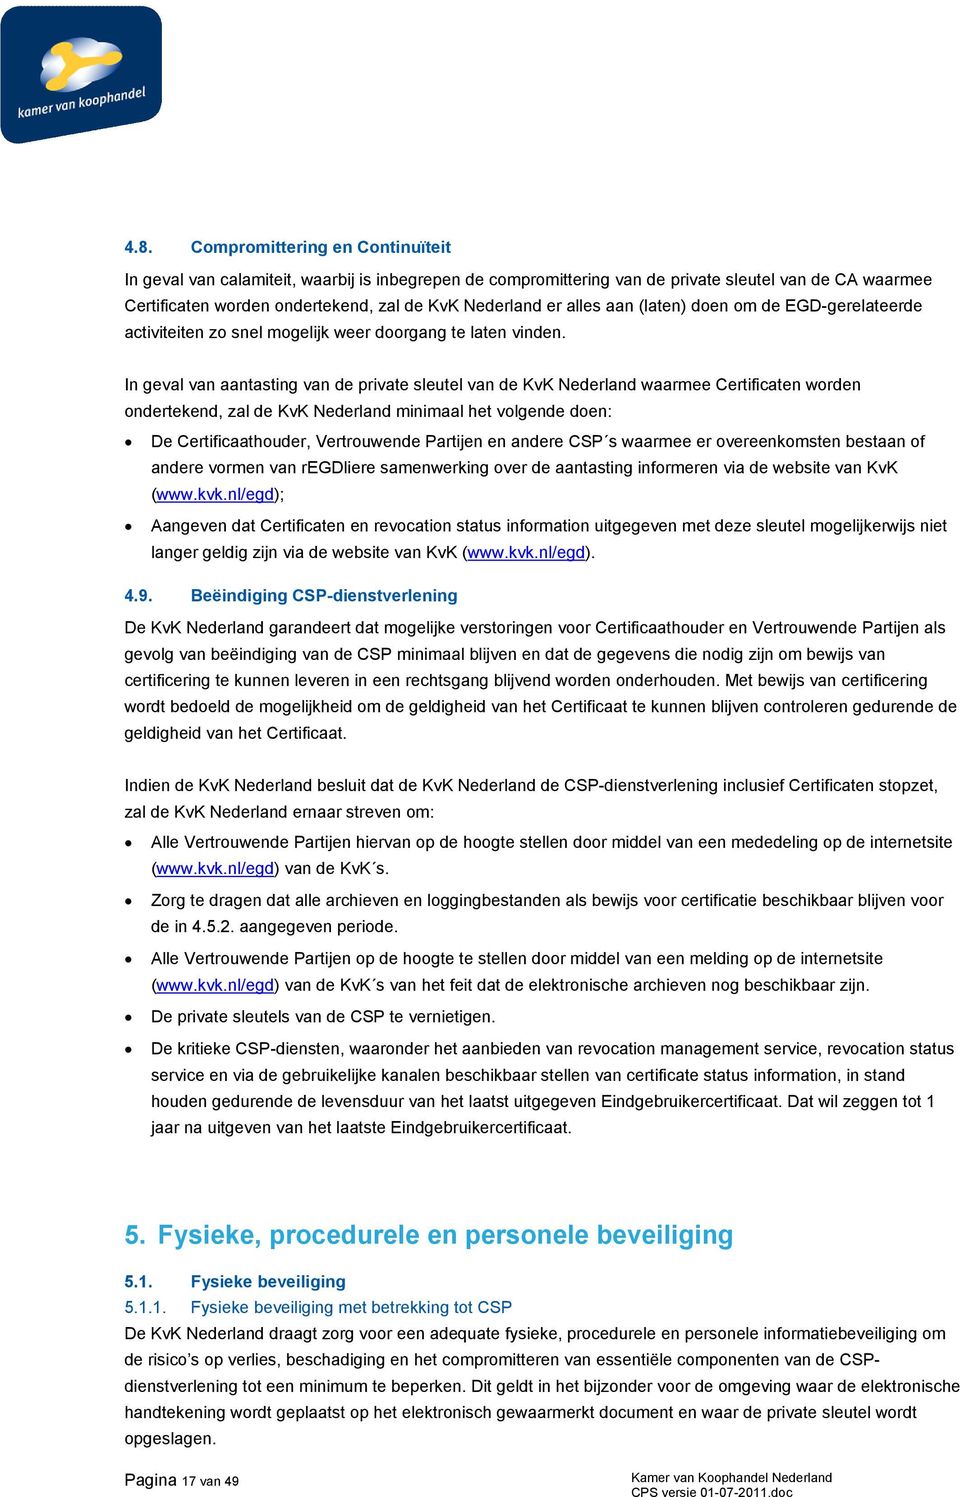 In geval van aantasting van de private sleutel van de KvK Nederland waarmee Certificaten worden ondertekend, zal de KvK Nederland minimaal het volgende doen: De Certificaathouder, Vertrouwende